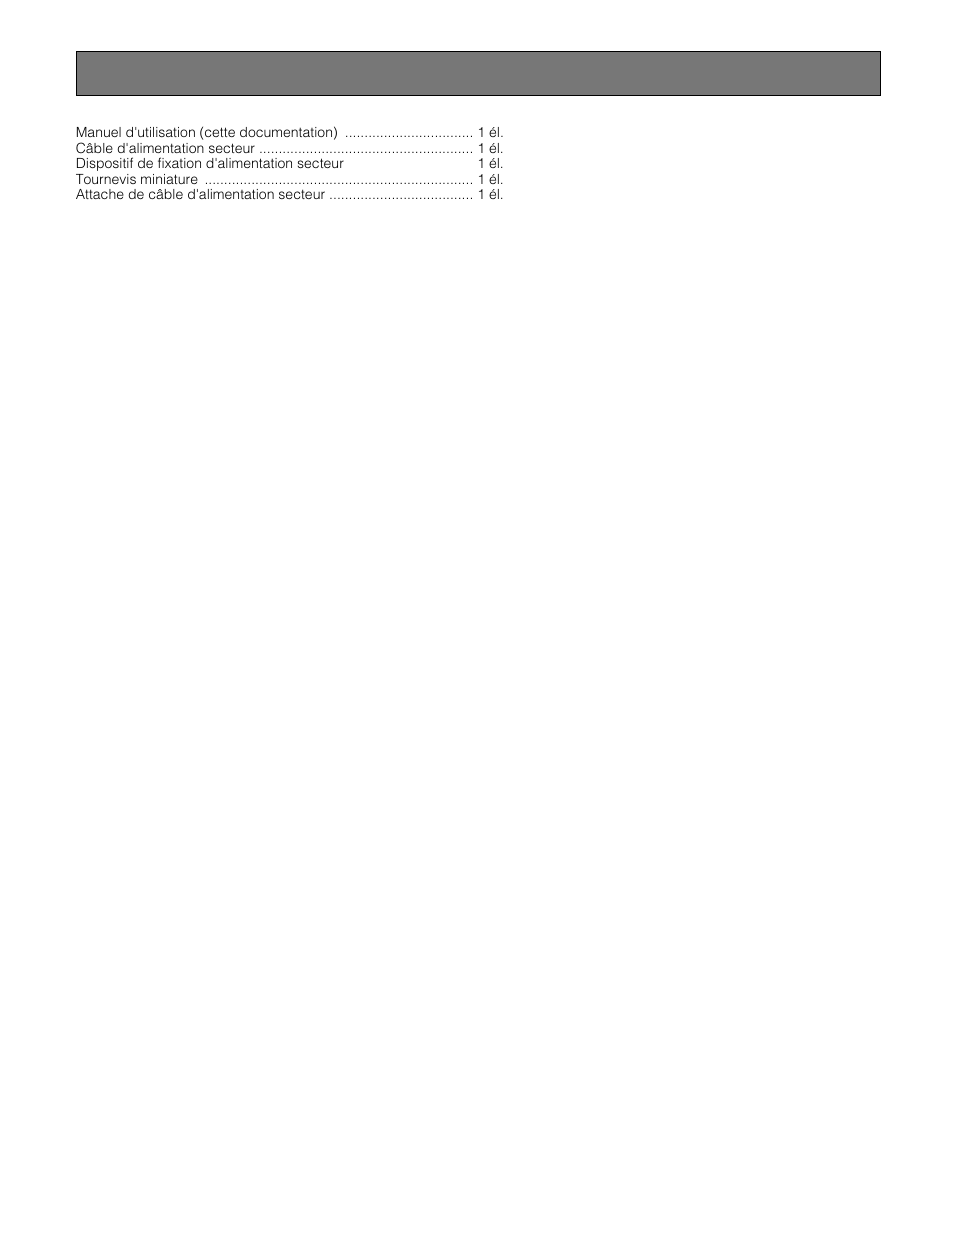 Accessoires standard | Panasonic WX-C3010 Manuel d'utilisation | Page 66 / 68